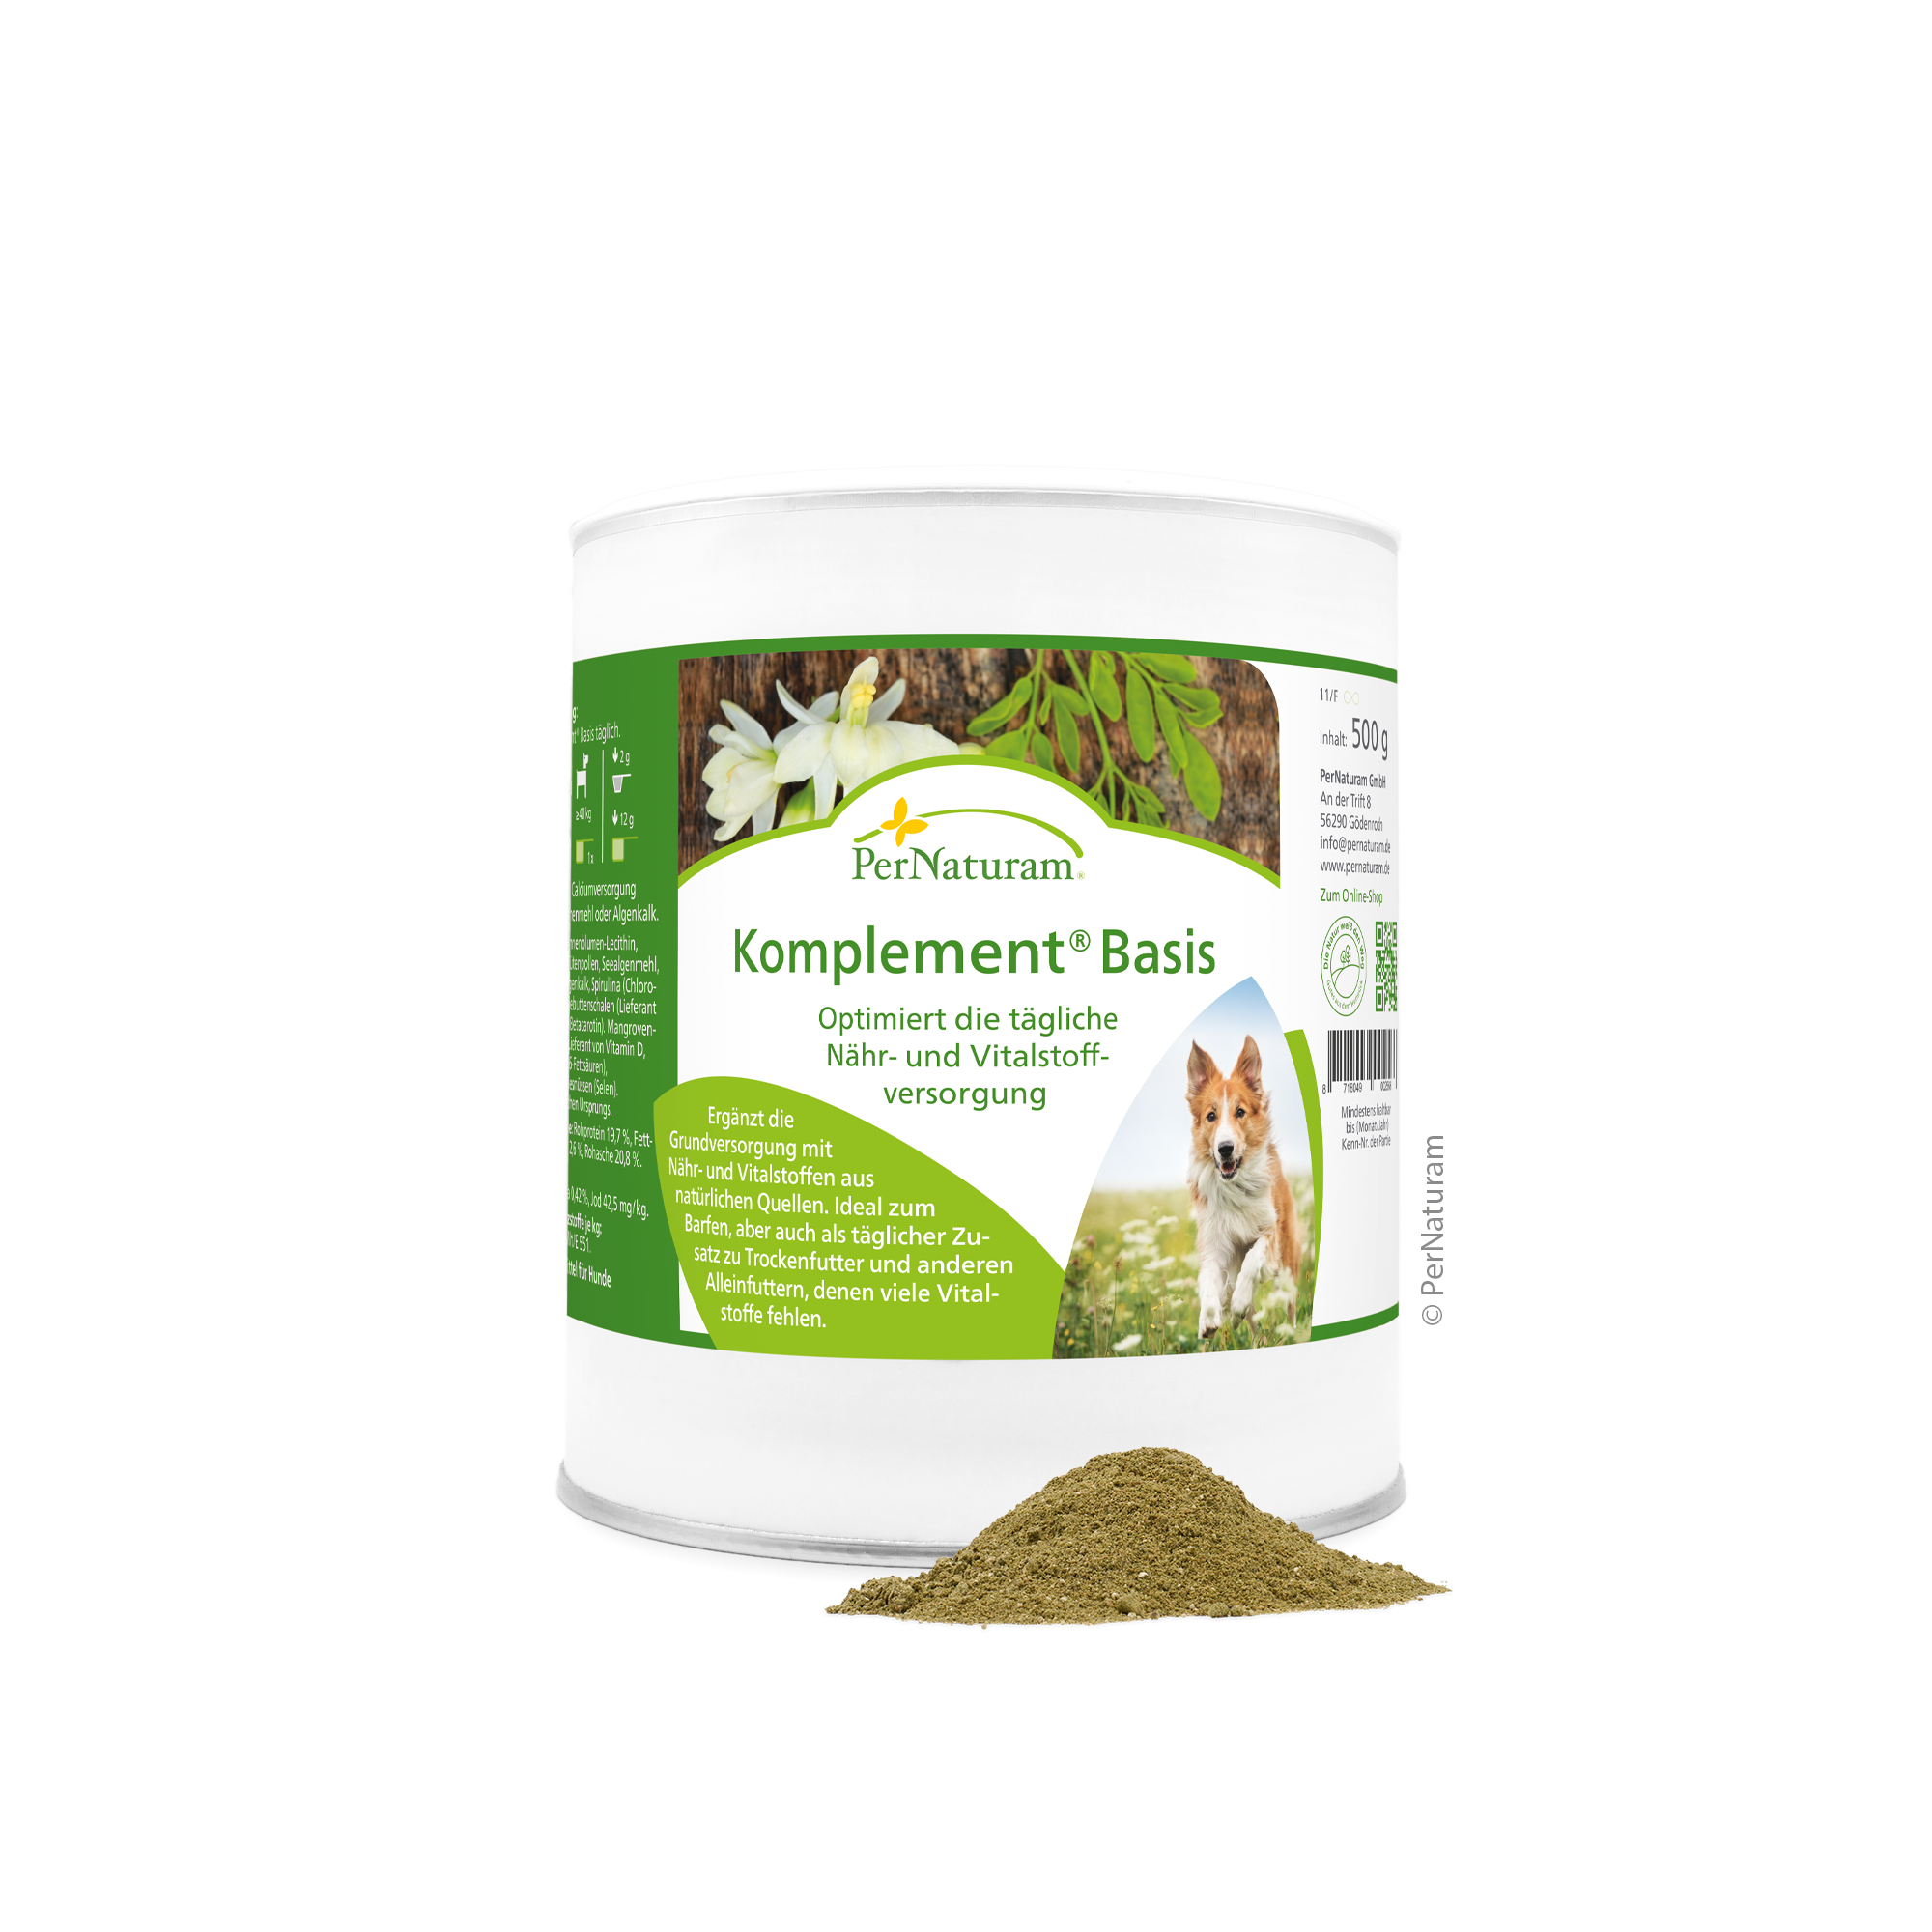 PerNaturam Komplement Basis - Optimiert die tägliche Nähr- und Vitalstoffversorgung 0,5 kg